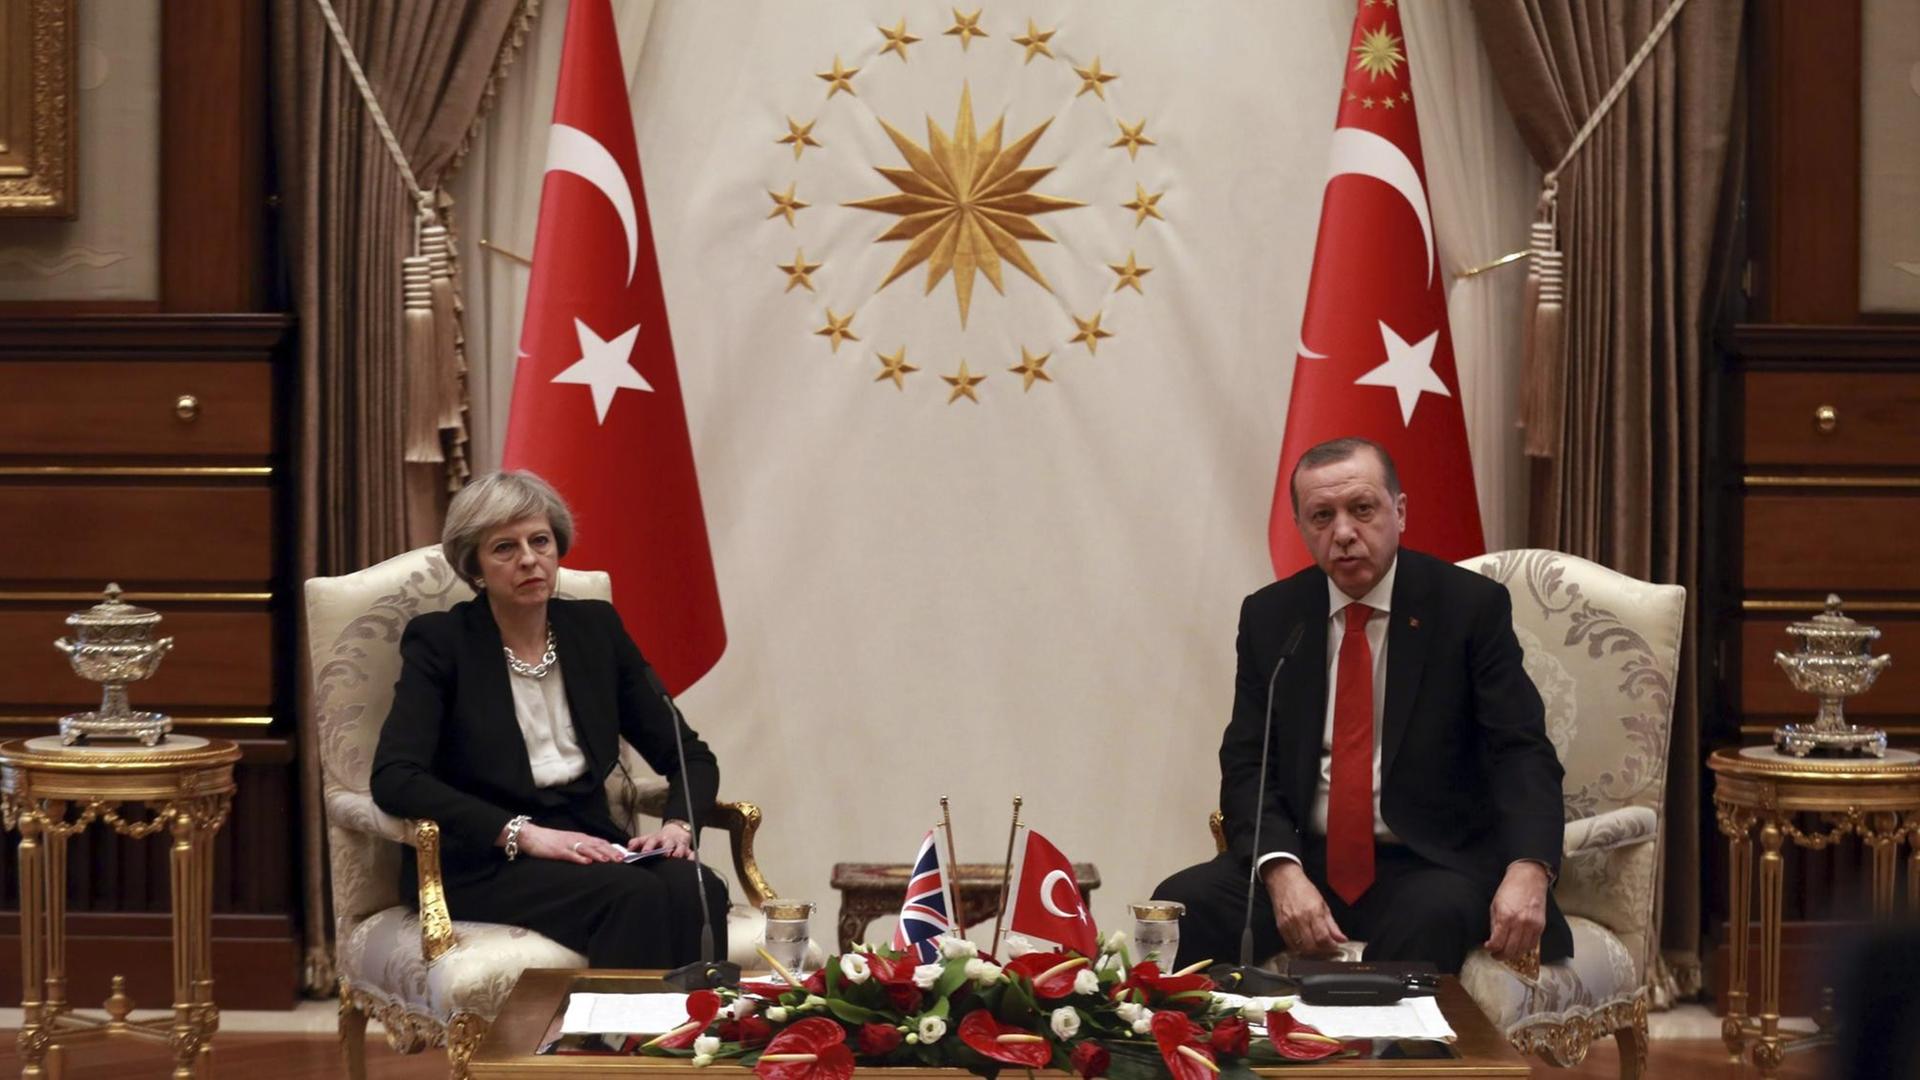 Theresa May und Recep Tayyip Erdogan sitzen in Stühlen vor zwei türkischen Flaggen